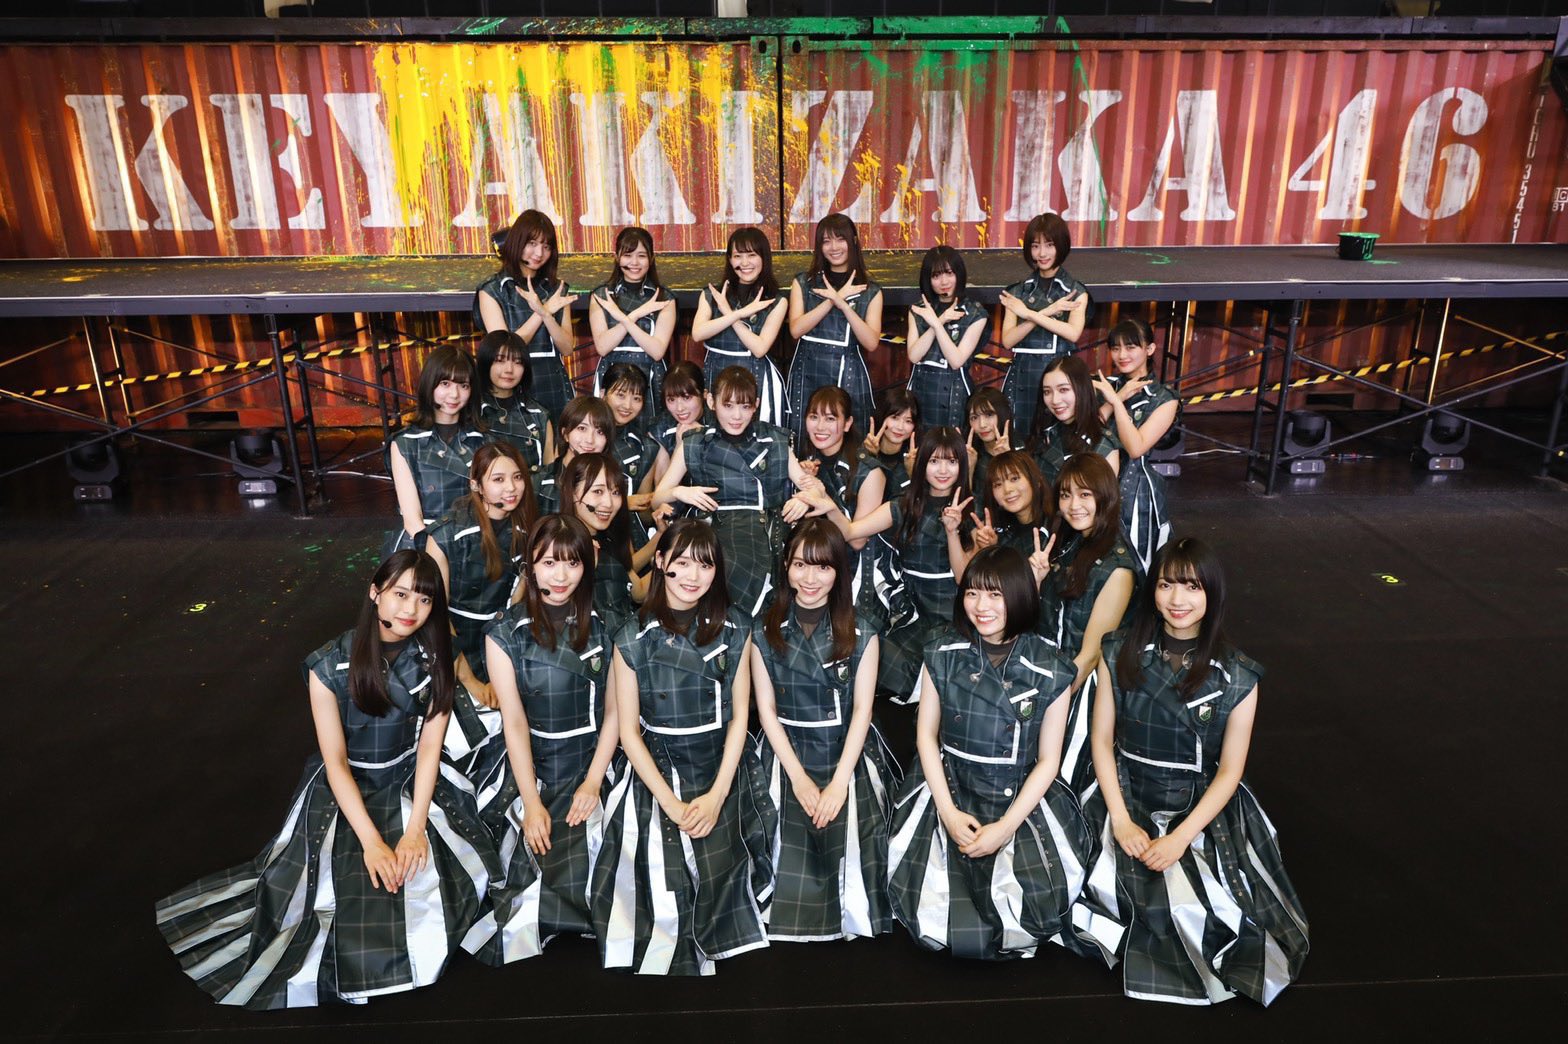 欅坂46 櫻坂46 ファンの芸能人 有名人35選 衝撃ランキング 最新決定版22 Ranky ランキー 女子が気になるランキングまとめサイト